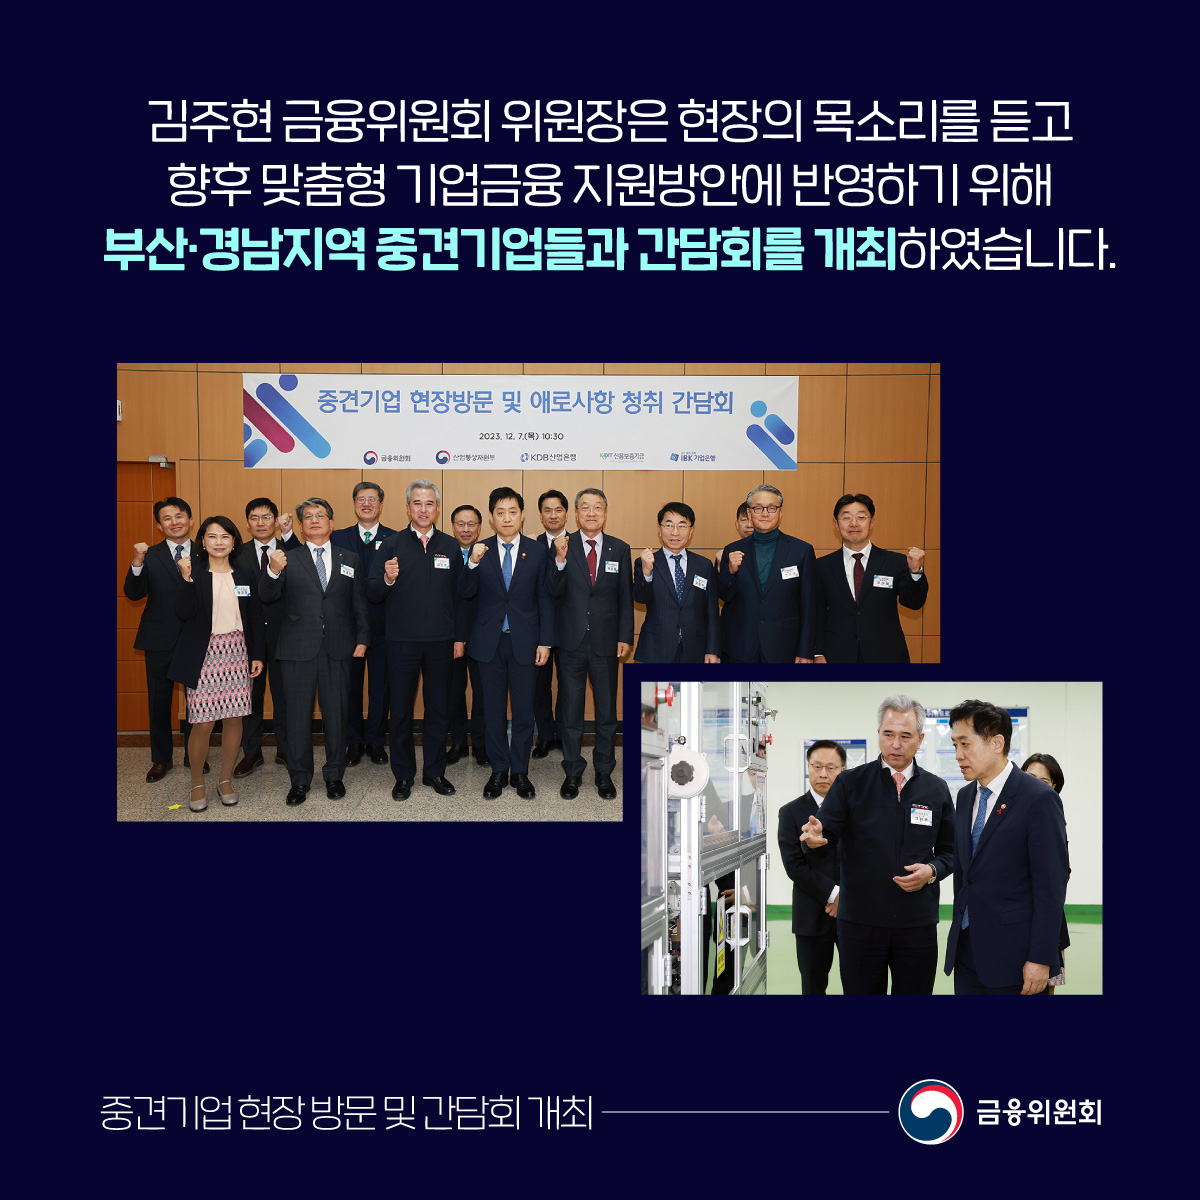 김주현 금융위원회 위원장은 현장의 목소리를 듣고 향후 맞춤형 기업금융 지원방안에 반영하기 위해 부산·경남지역 중견기업들과 간담회를 개최하였습니다.